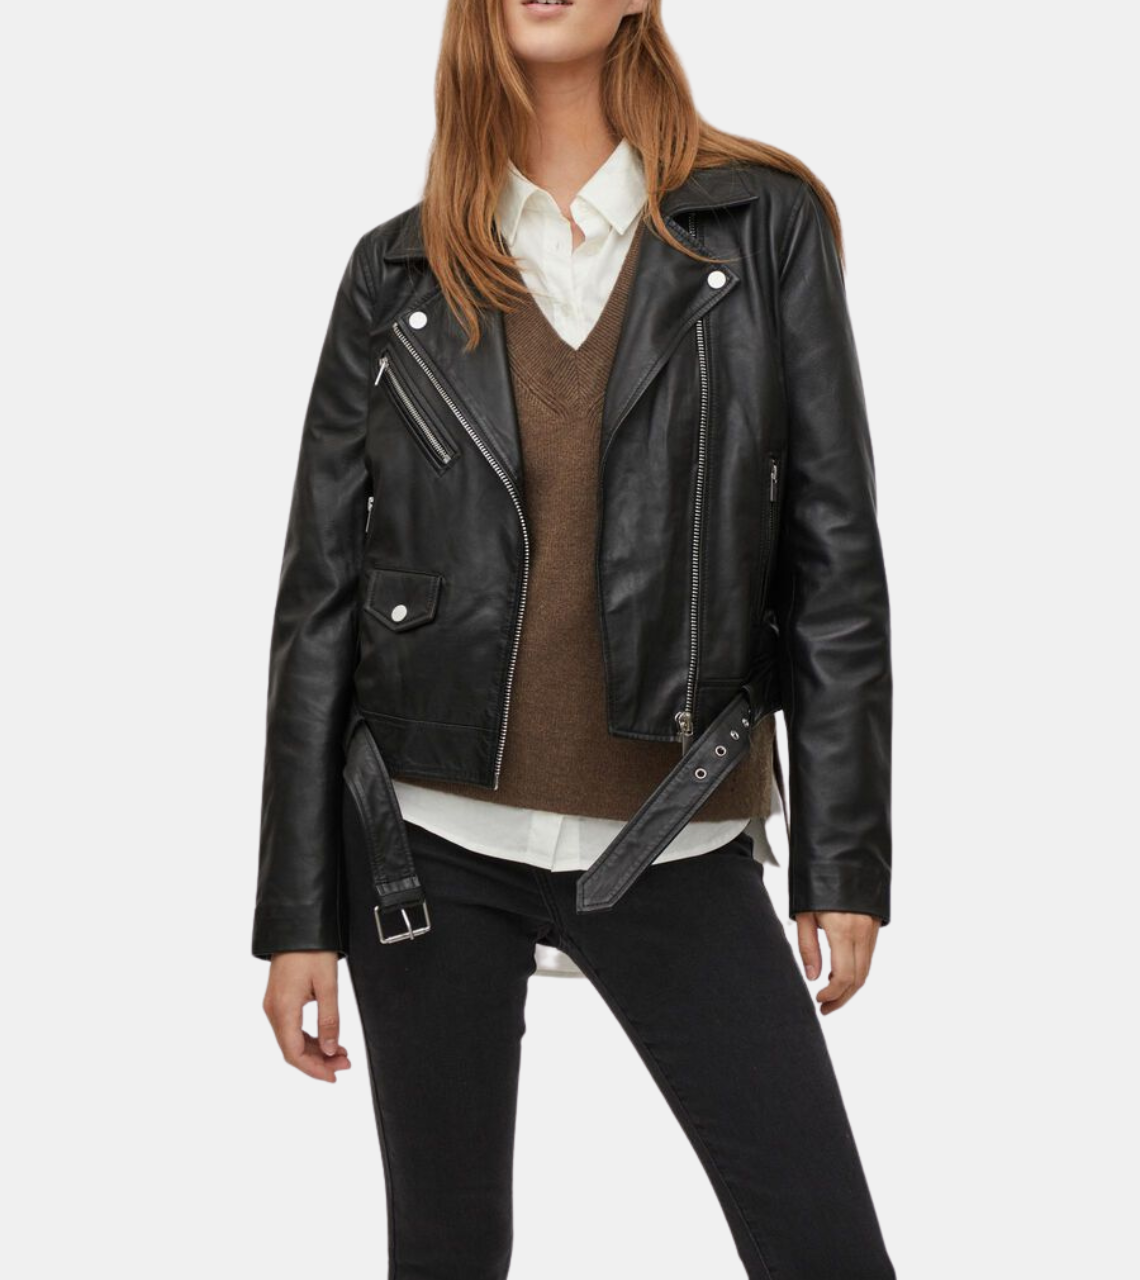  Lovella Women's Black Biker Leather jacket 